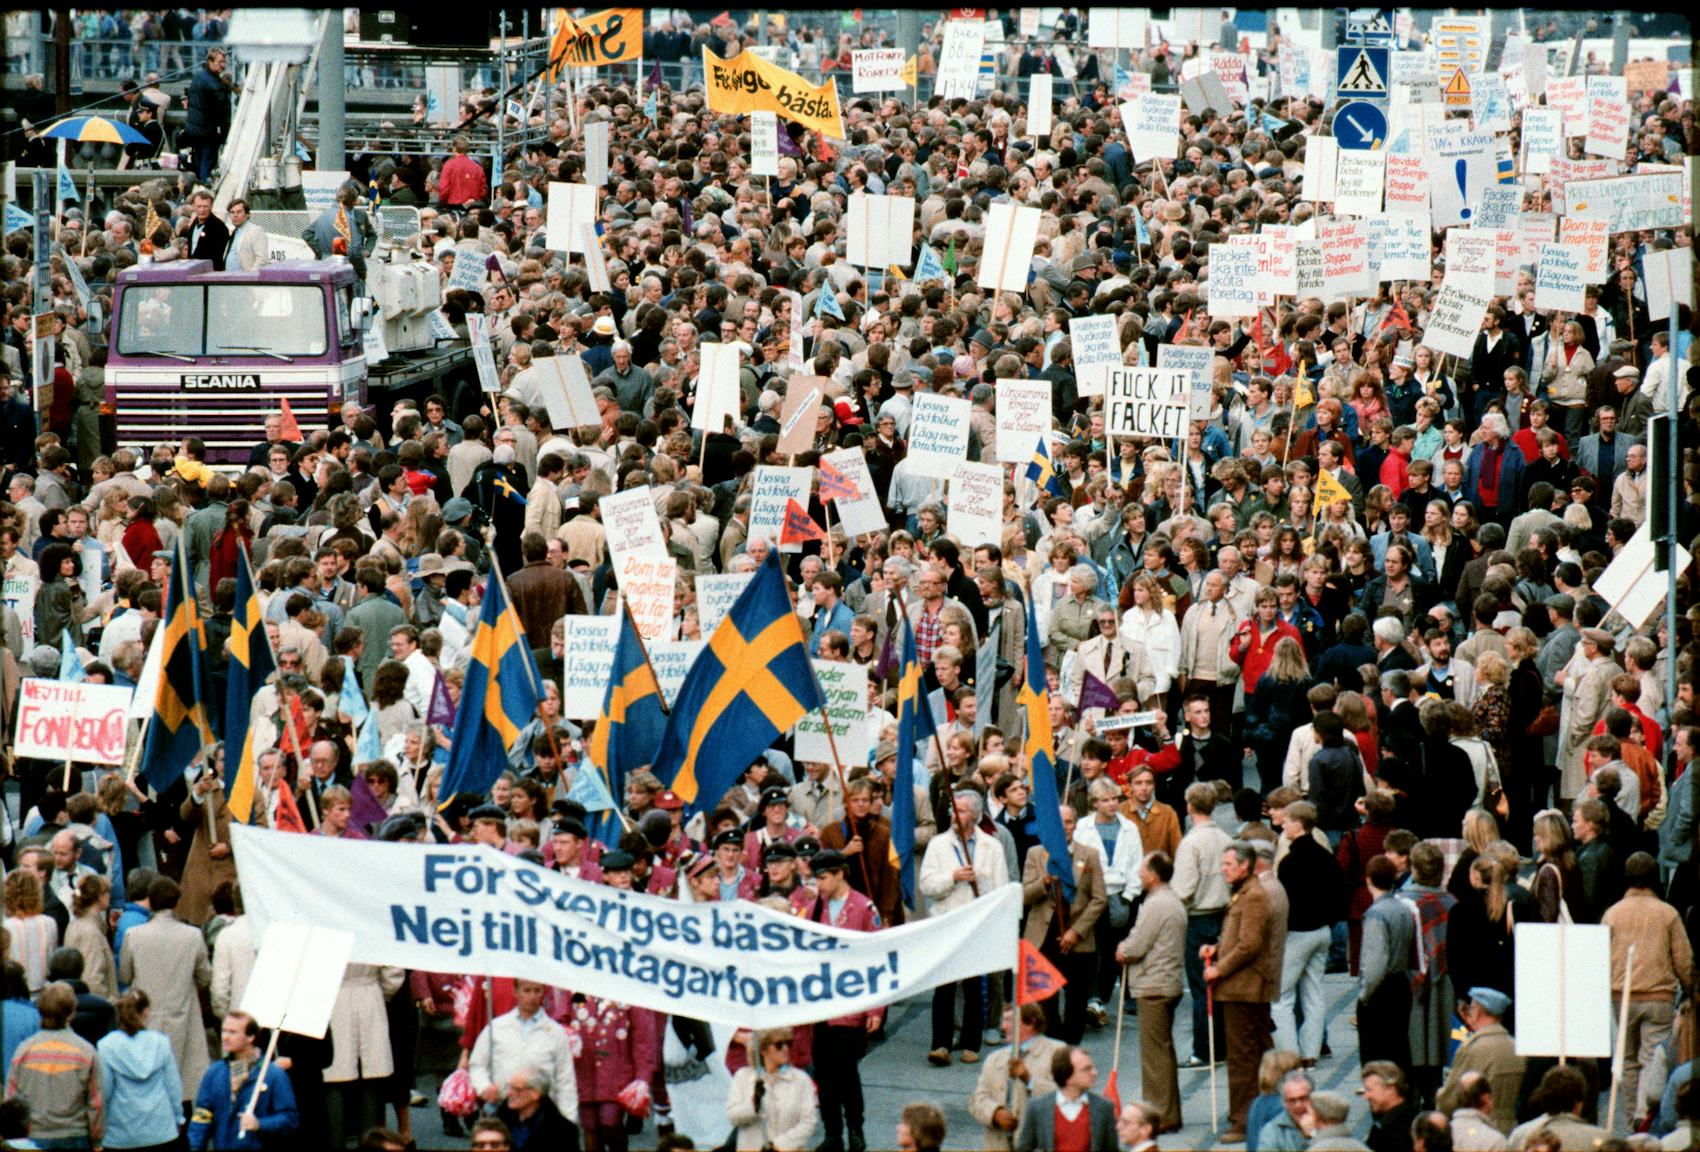 Demonstration mot löntagarfonderna, på en banderoll syns budskapet ”För Sveriges bästa, Nej till löntagarfonder”.